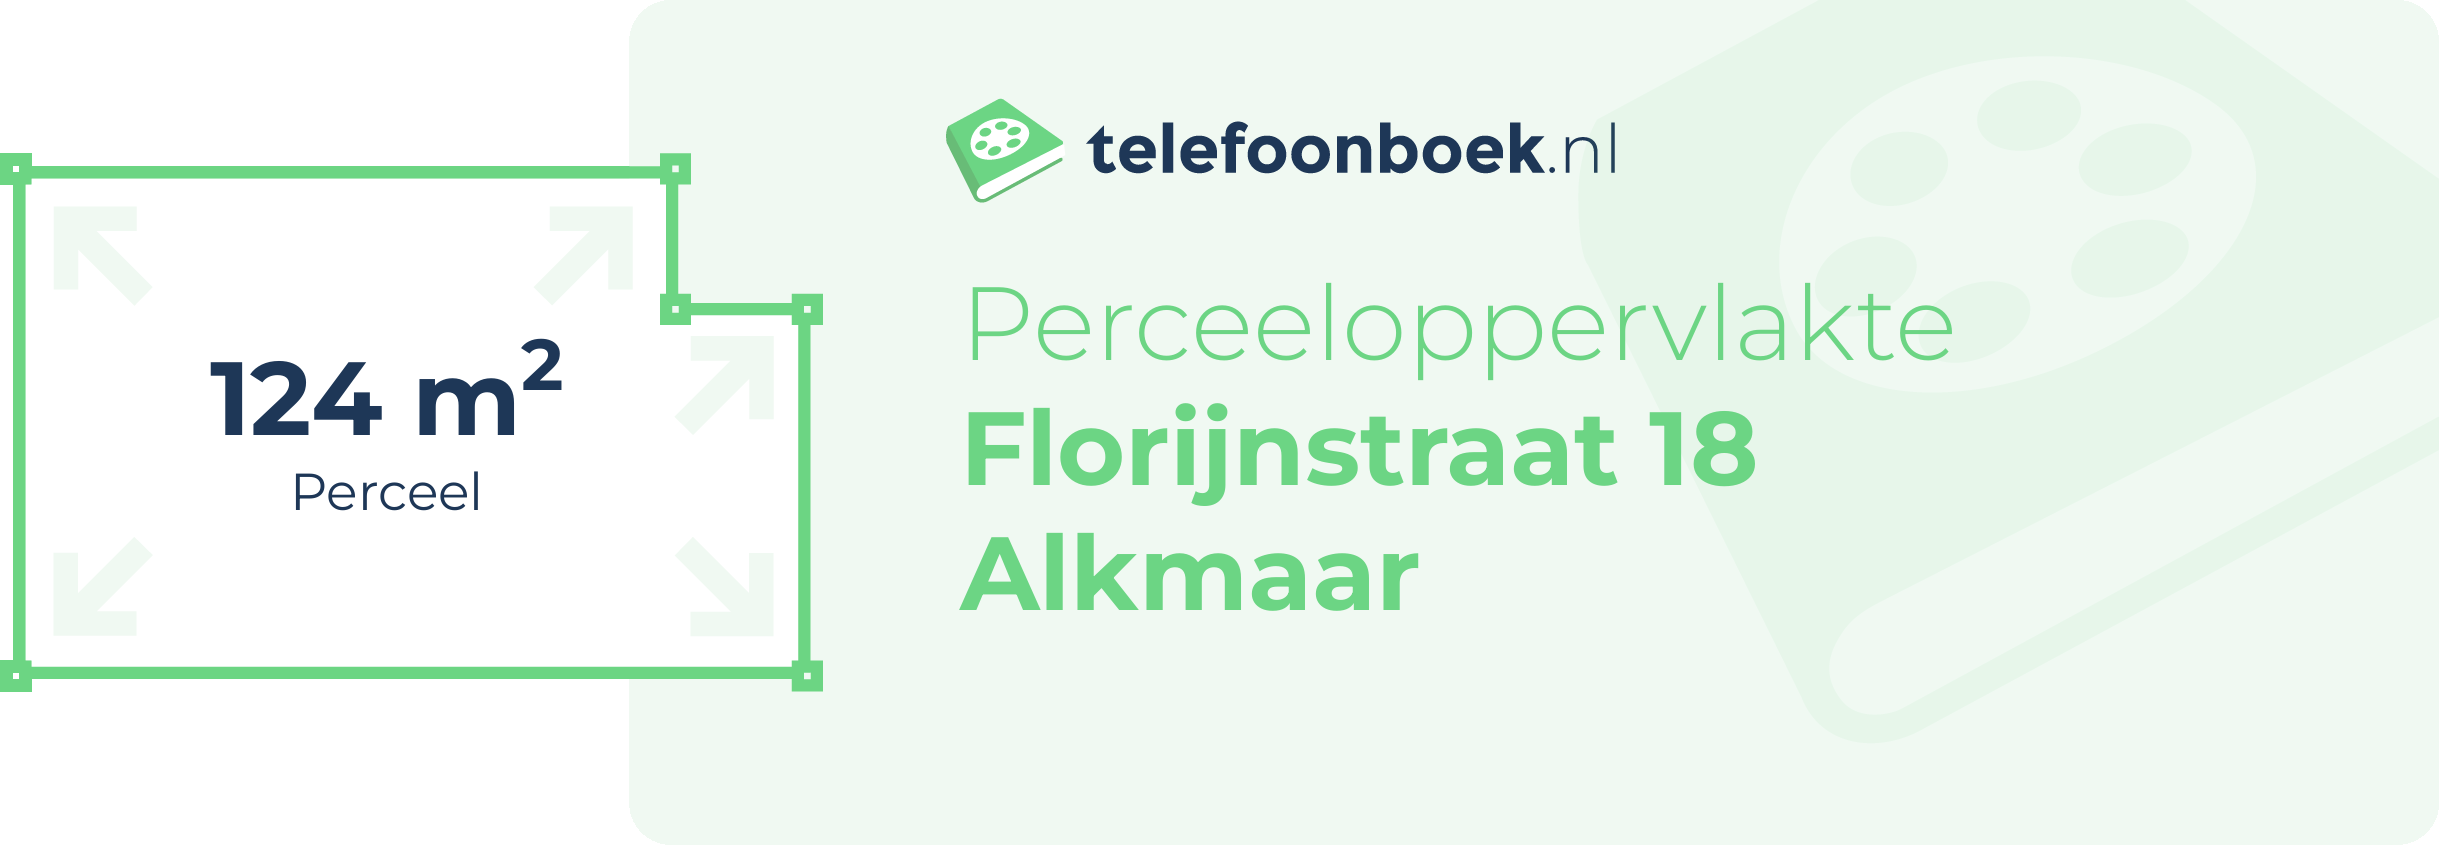 Perceeloppervlakte Florijnstraat 18 Alkmaar